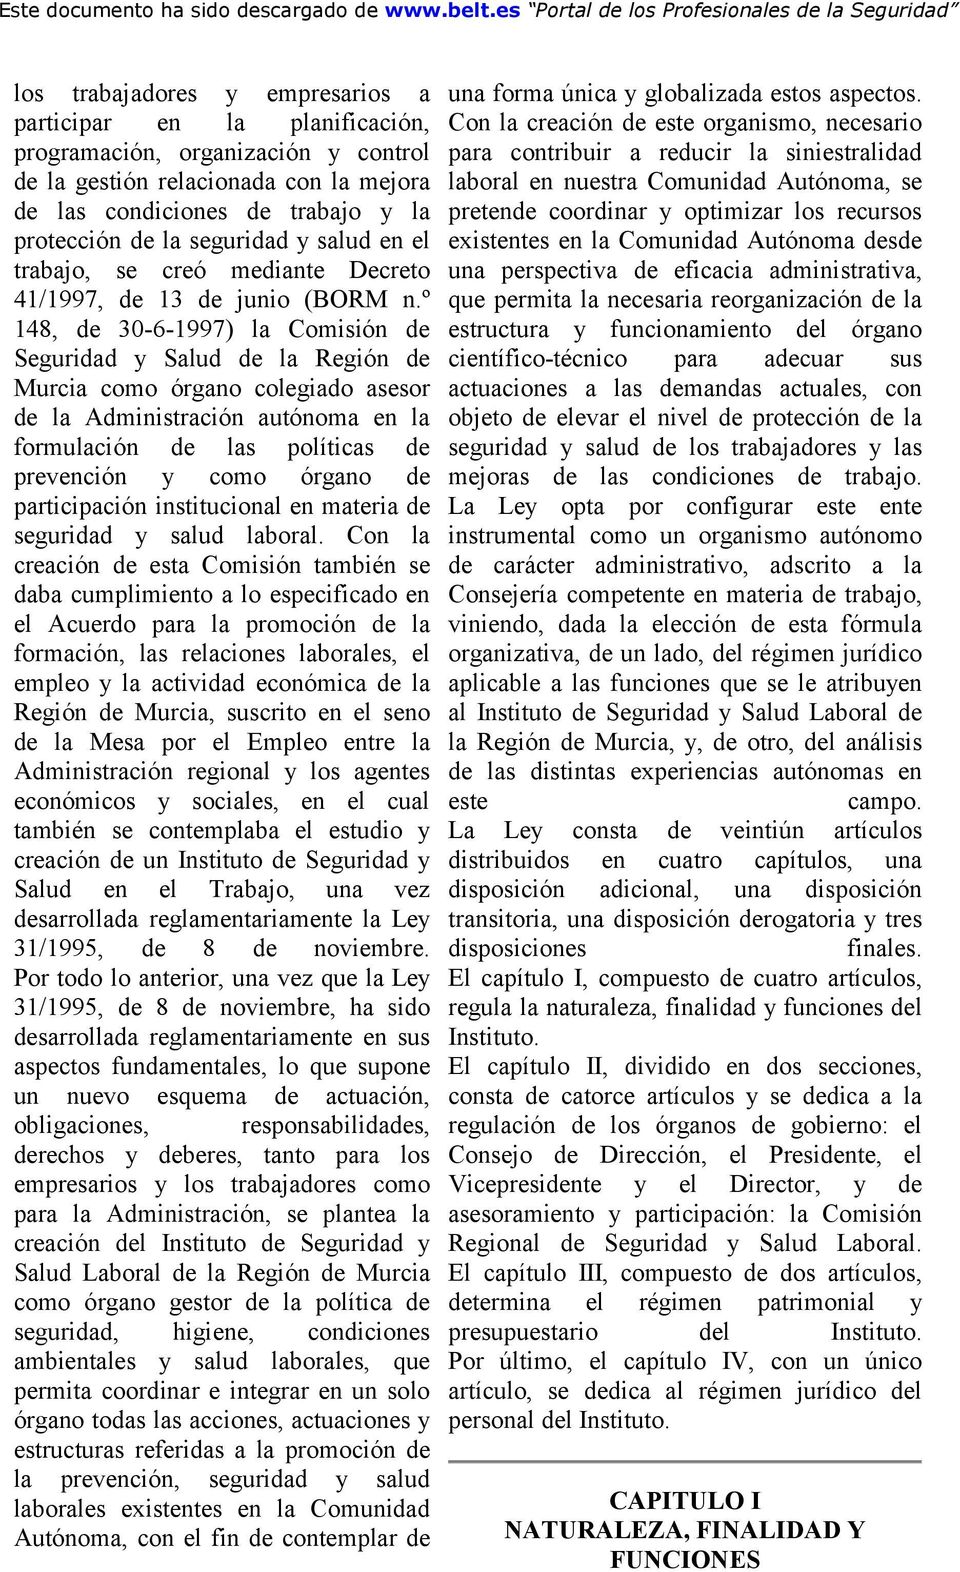 º 148, de 30-6-1997) la Comisión de Seguridad y Salud de la Región de Murcia como órgano colegiado asesor de la Administración autónoma en la formulación de las políticas de prevención y como órgano